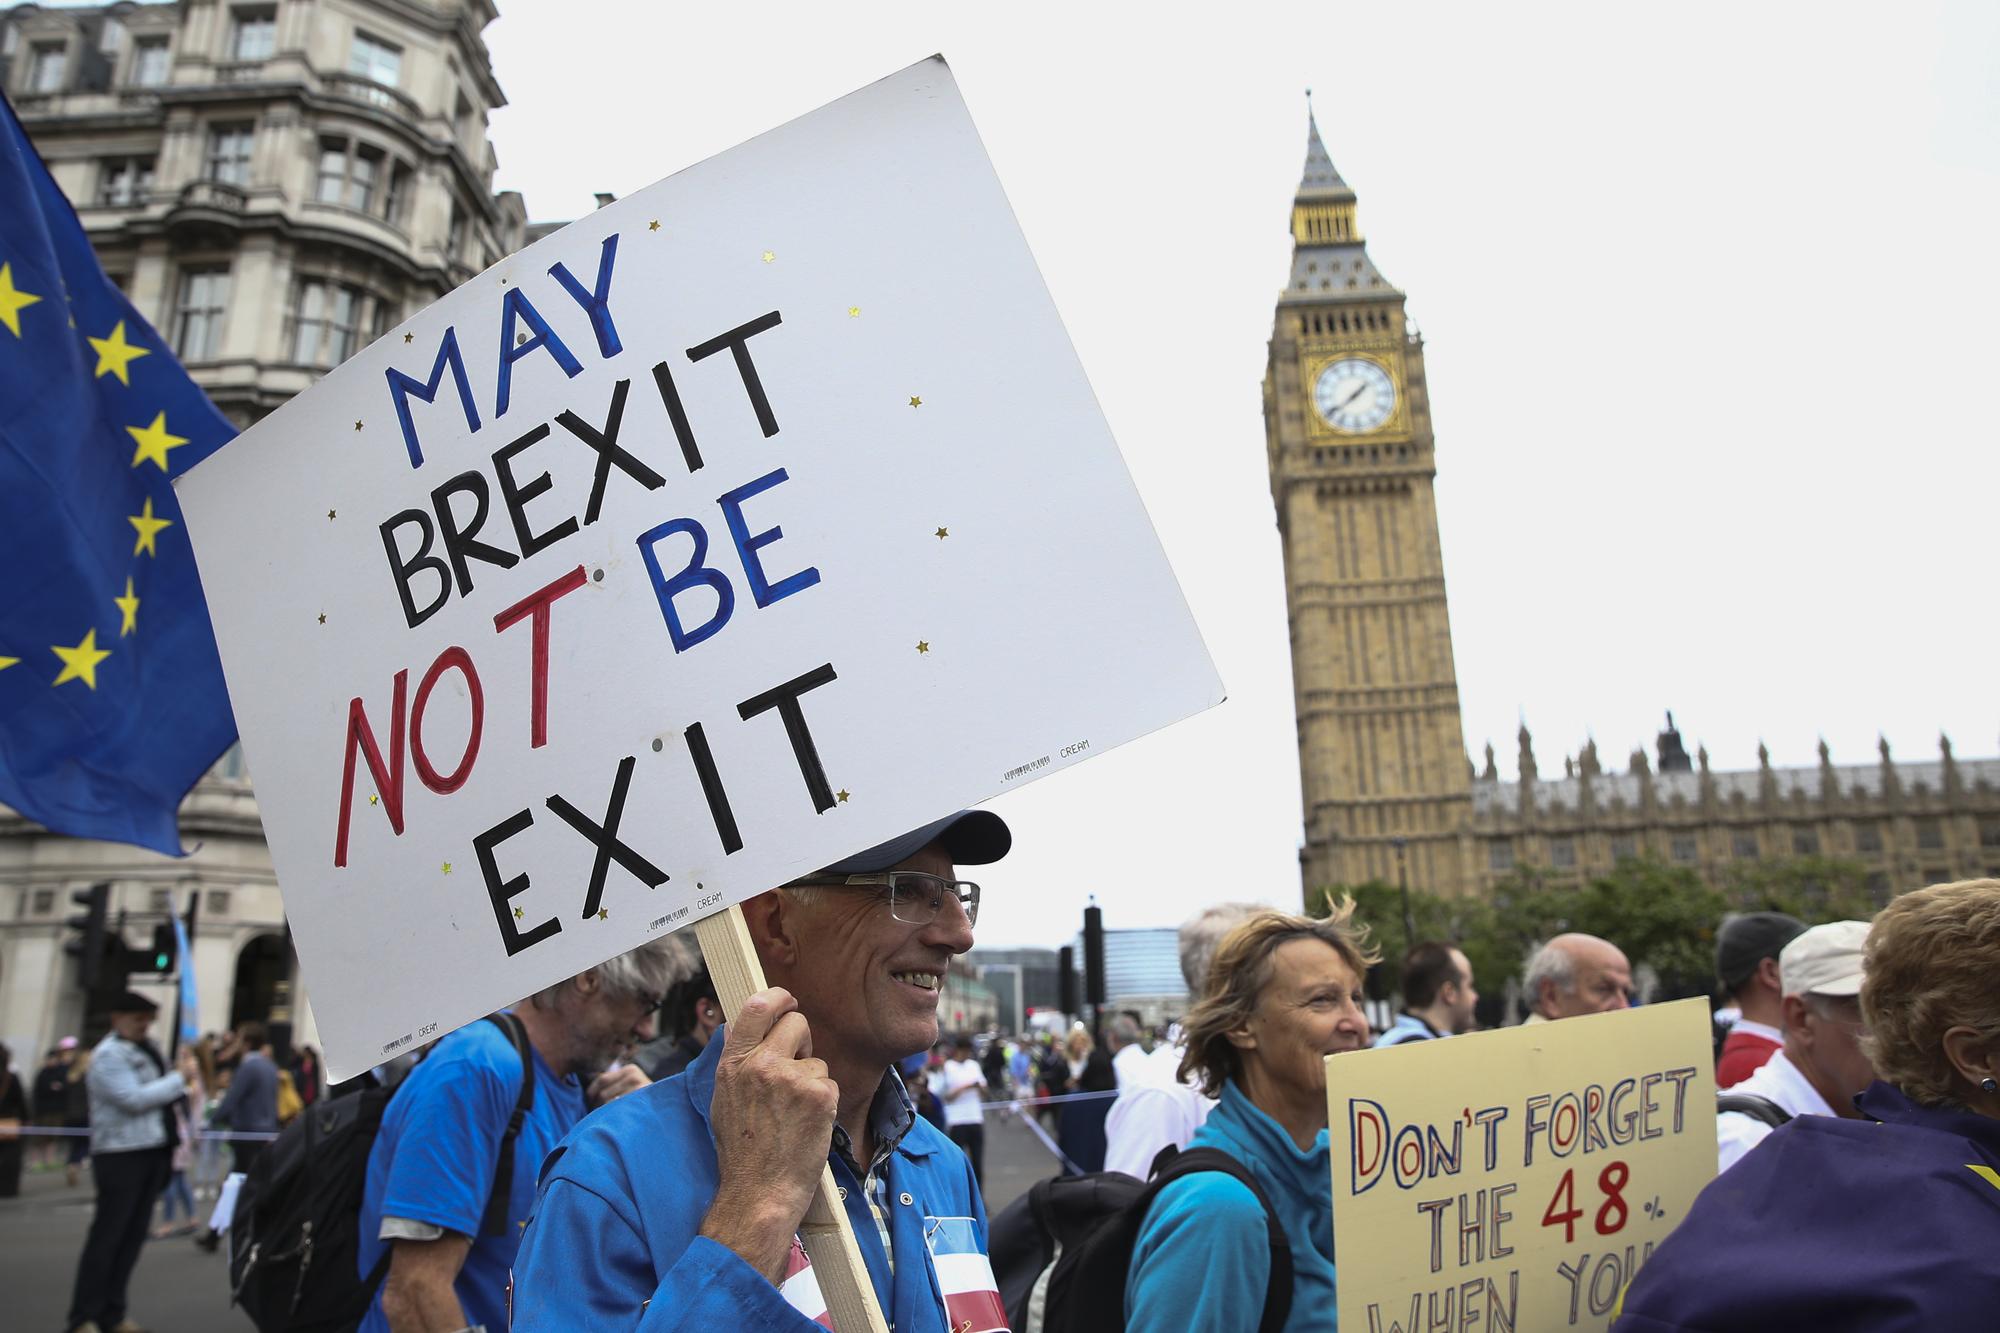 Un homme défile à Londres avec une pancarte "May Brexit not be exit" ("Espérons que le Brexit ne mène pas à une sortie"). [AFP - Justin Tallis]